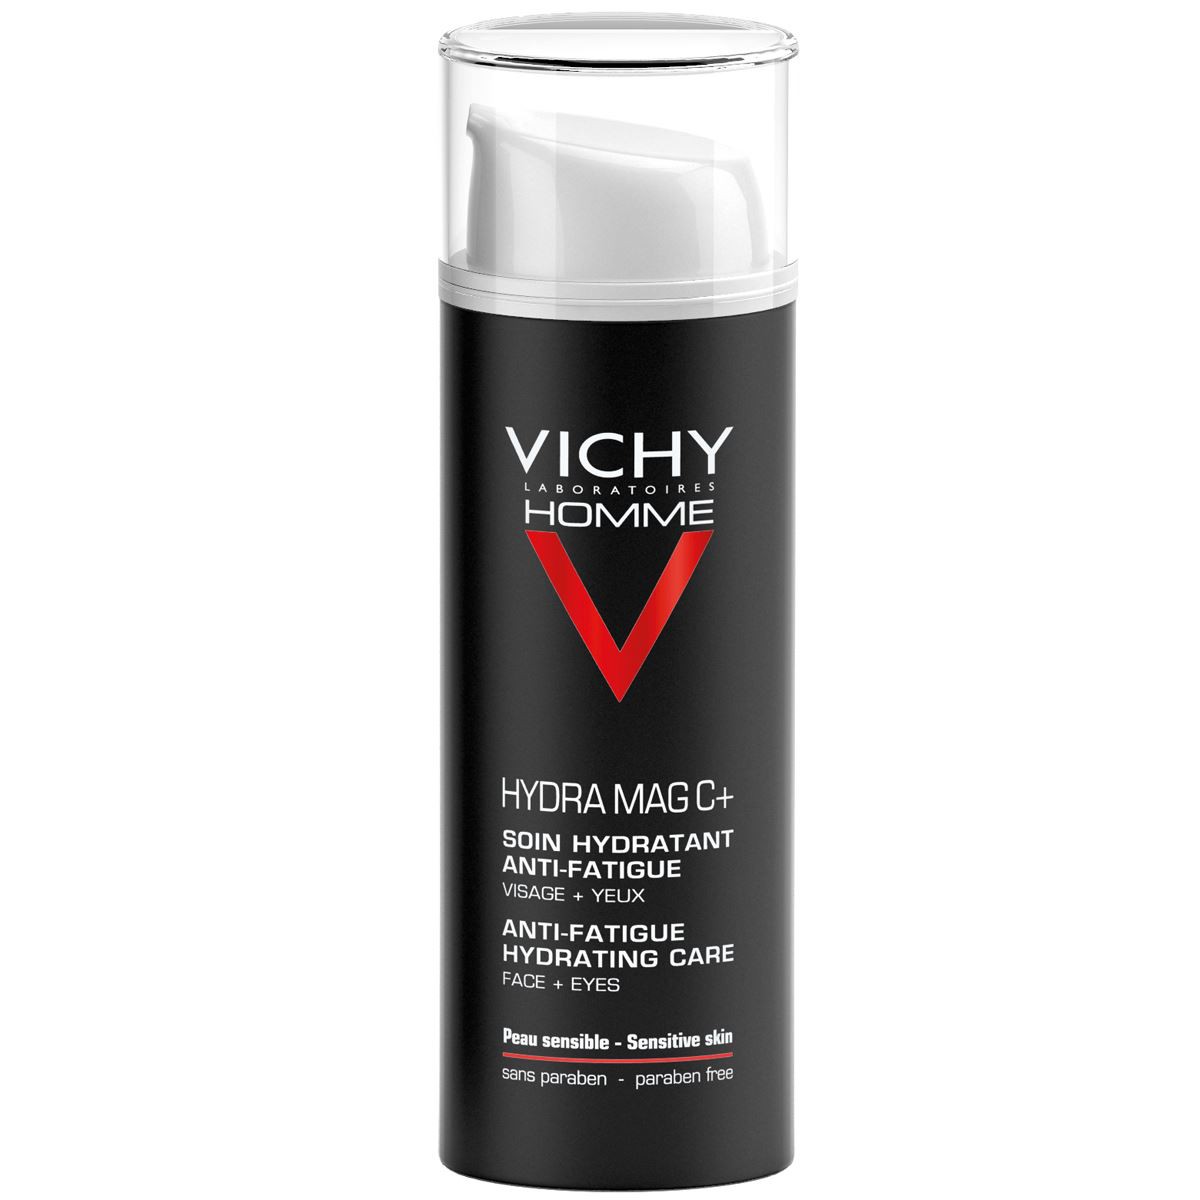 Vichy Homme Hydra Mag C Anti-fatigue Hydrating Cream 50ml